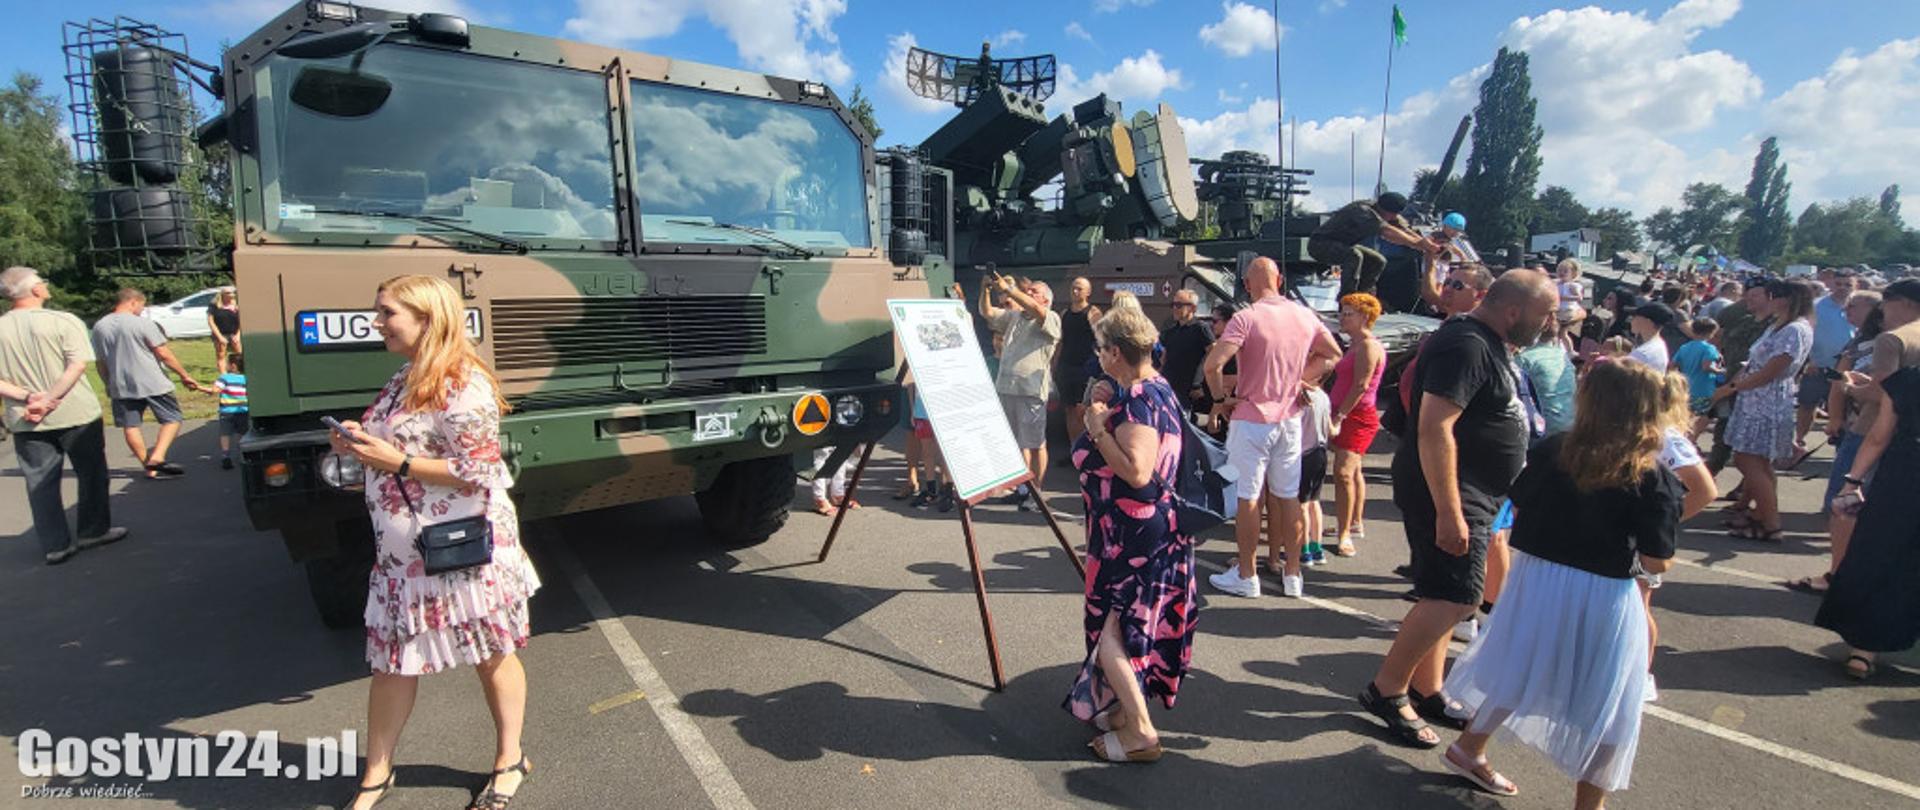 Zdjęcie przedstawia pojazdy wojskowe i odwiedzających ludzi.